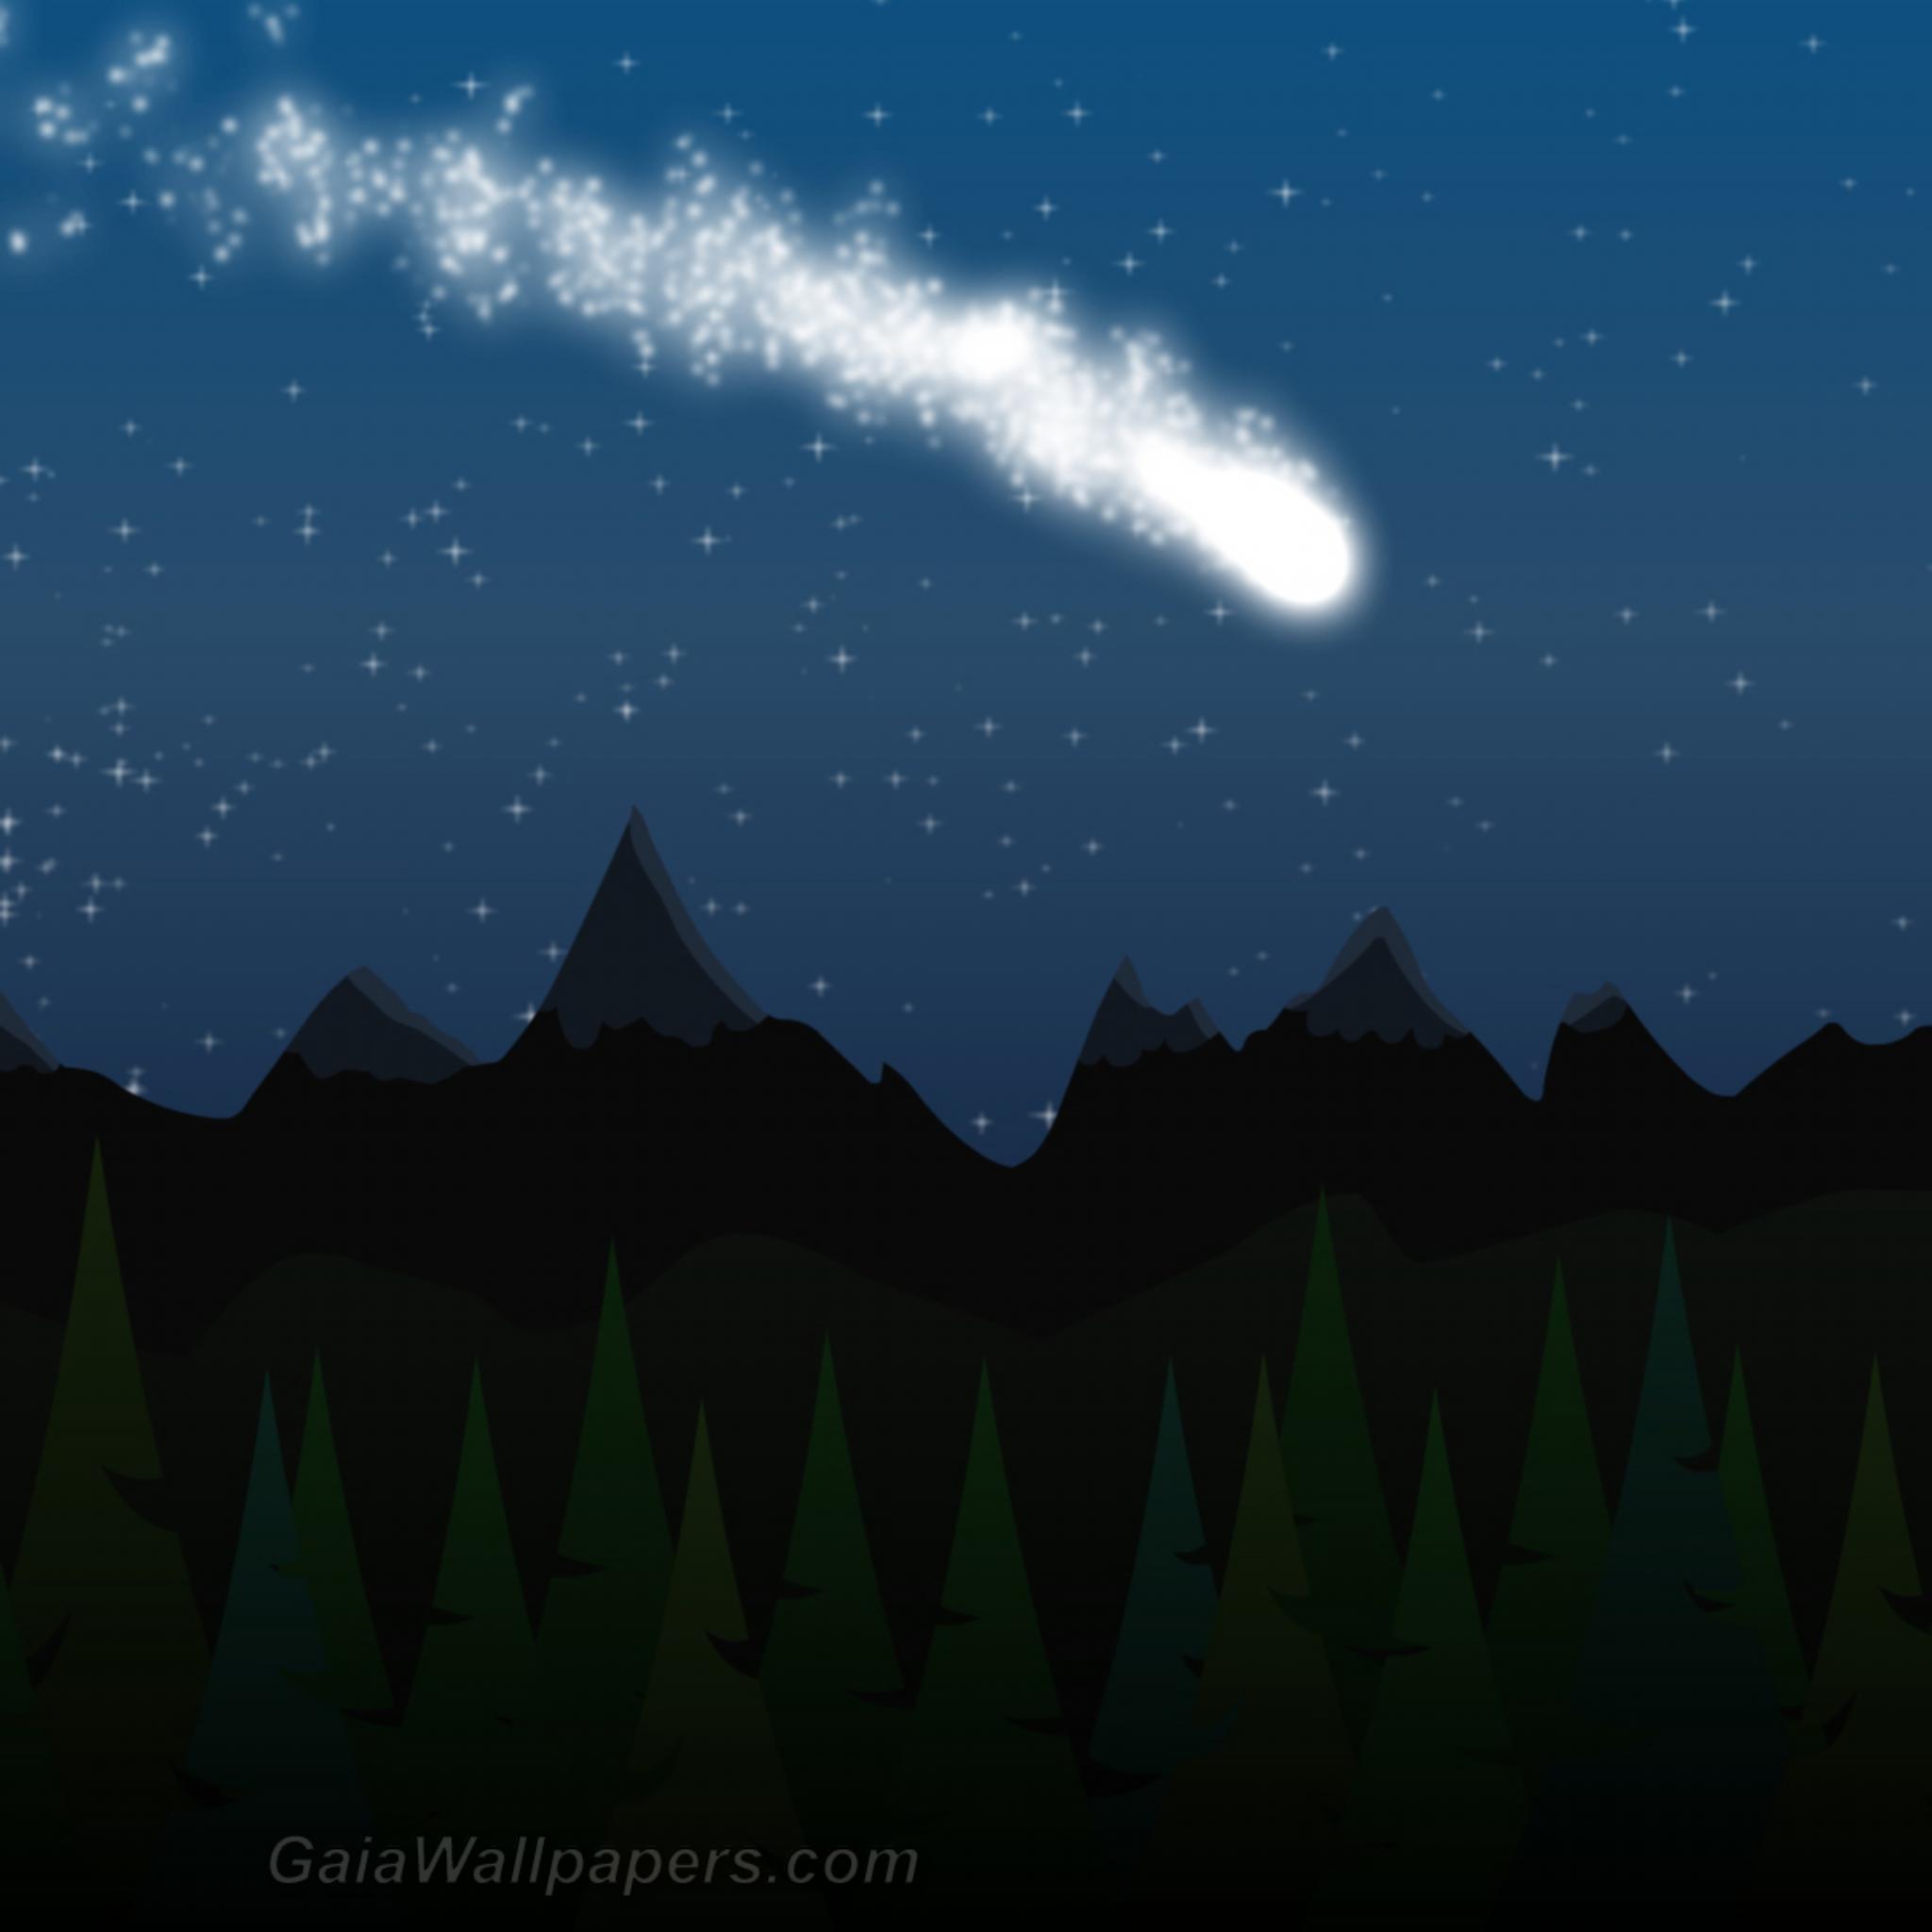 Comet in the starry sky - Free desktop wallpapers